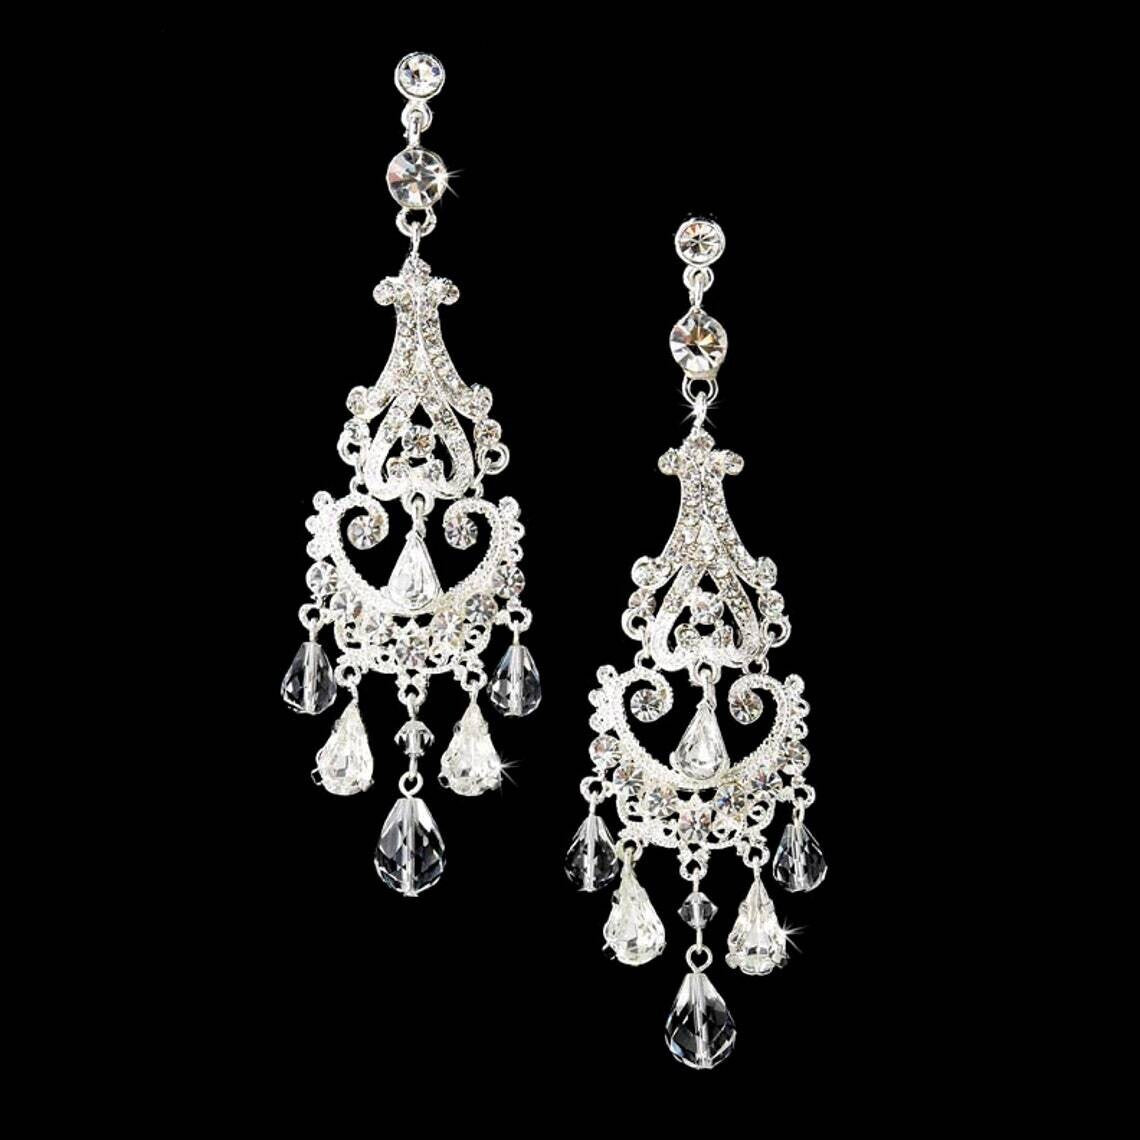 Lotte - Swarovski chandelier bridal earrings